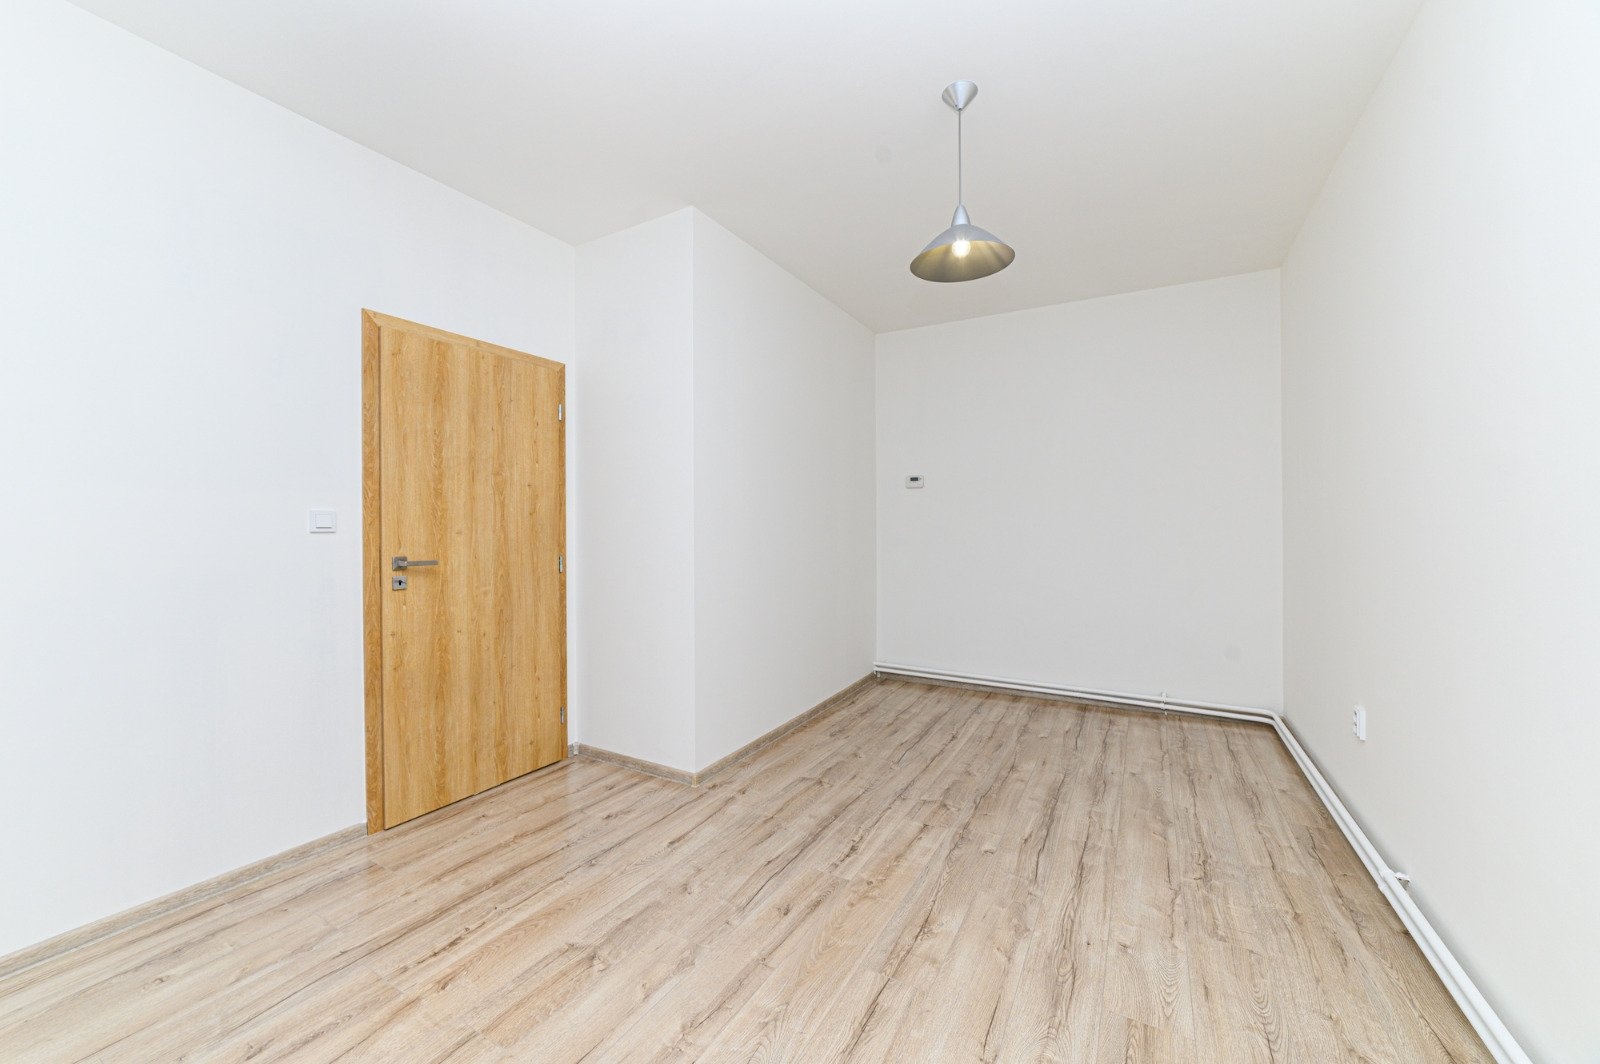 Slunný byt 3+kk v klidné lokalitě, 78 m² - Ostrava - Mariánské Hory